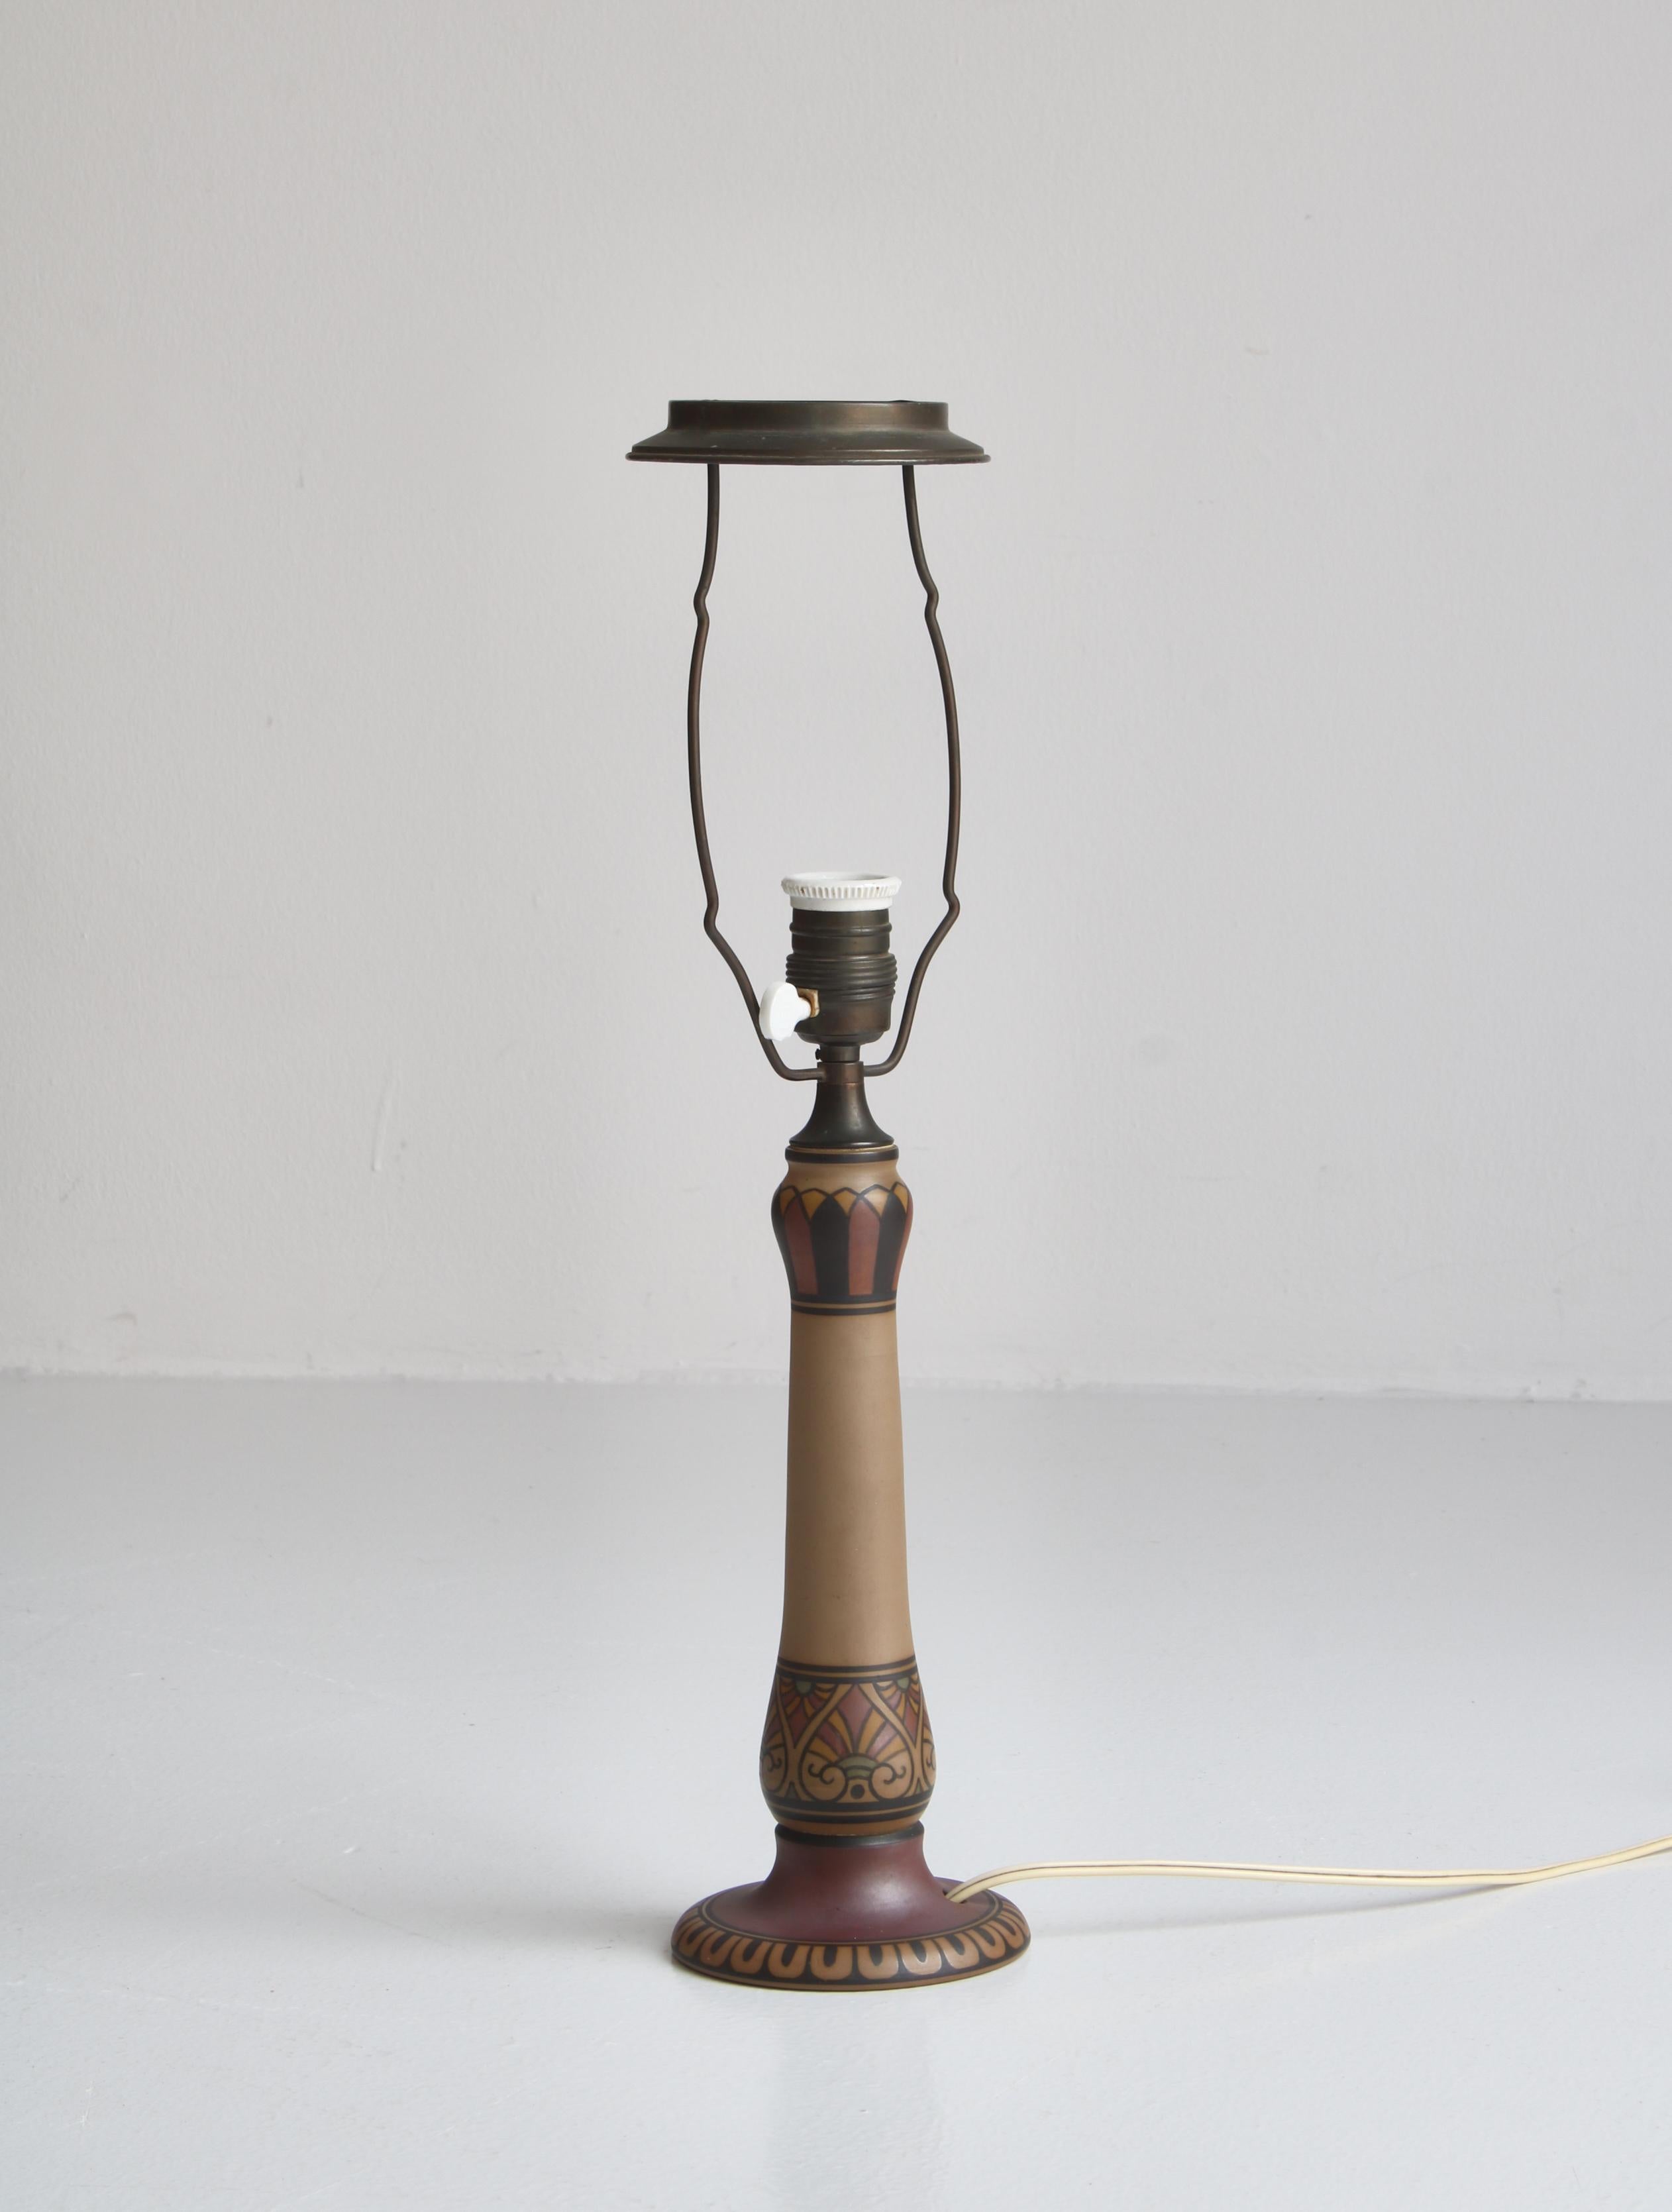 Élégante lampe de table en faïence Art Nouveau peinte à la main avec des motifs abstraits.